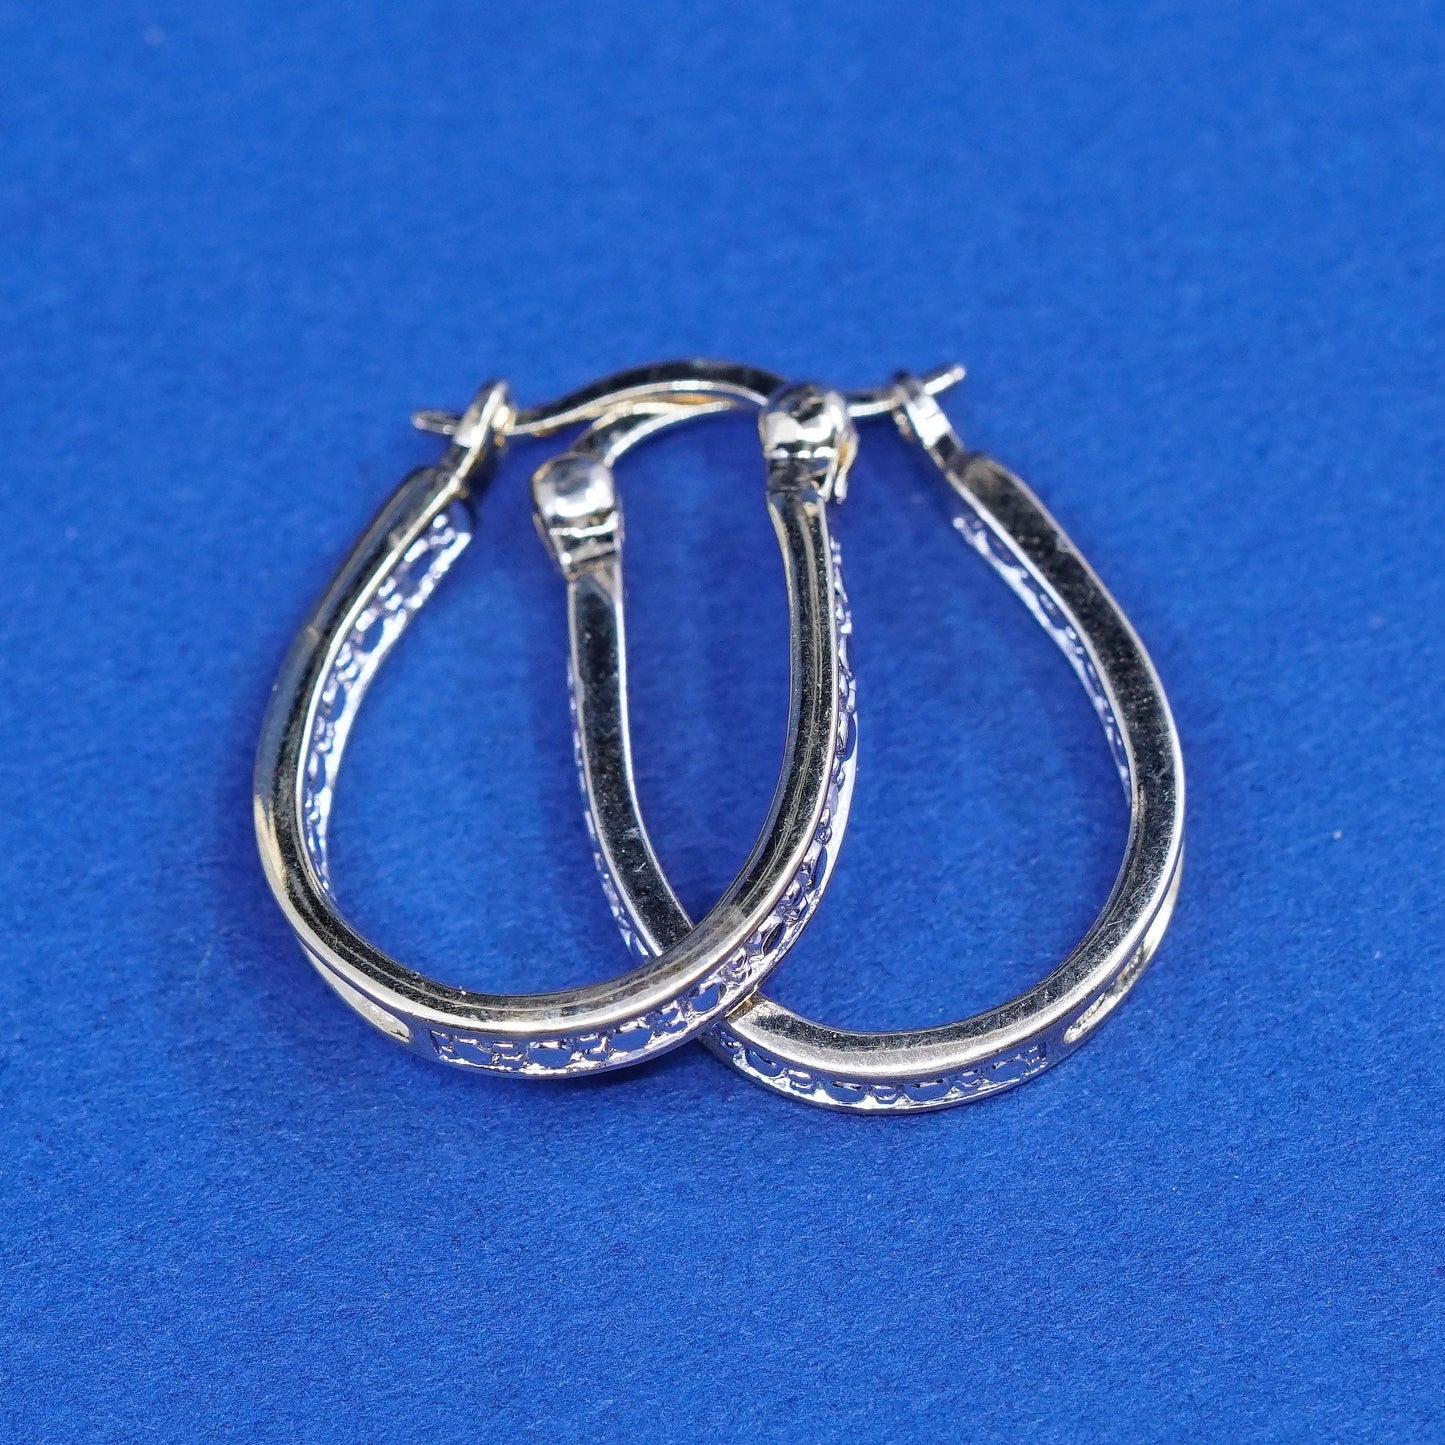 0.5”, Vermeil gold over Sterling silver earrings, 925 hooks, huggie w/ diamond